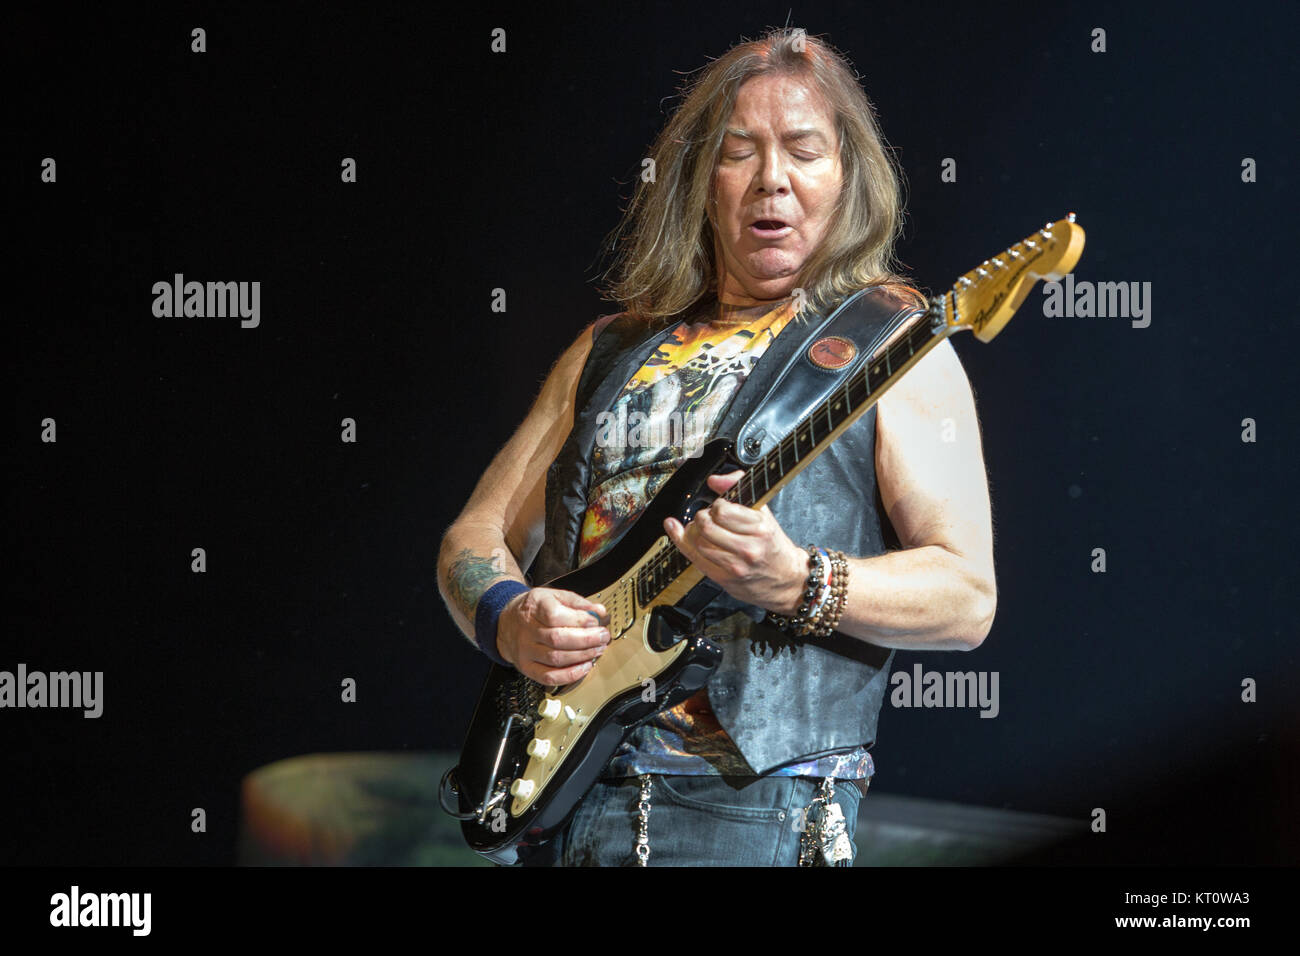 Iron Maiden, la banda de heavy metal Inglés, realiza un concierto en vivo  en Telenor Arena de Oslo. Aquí el guitarrista Dave Murray es visto en vivo  en el escenario. Noruega, el